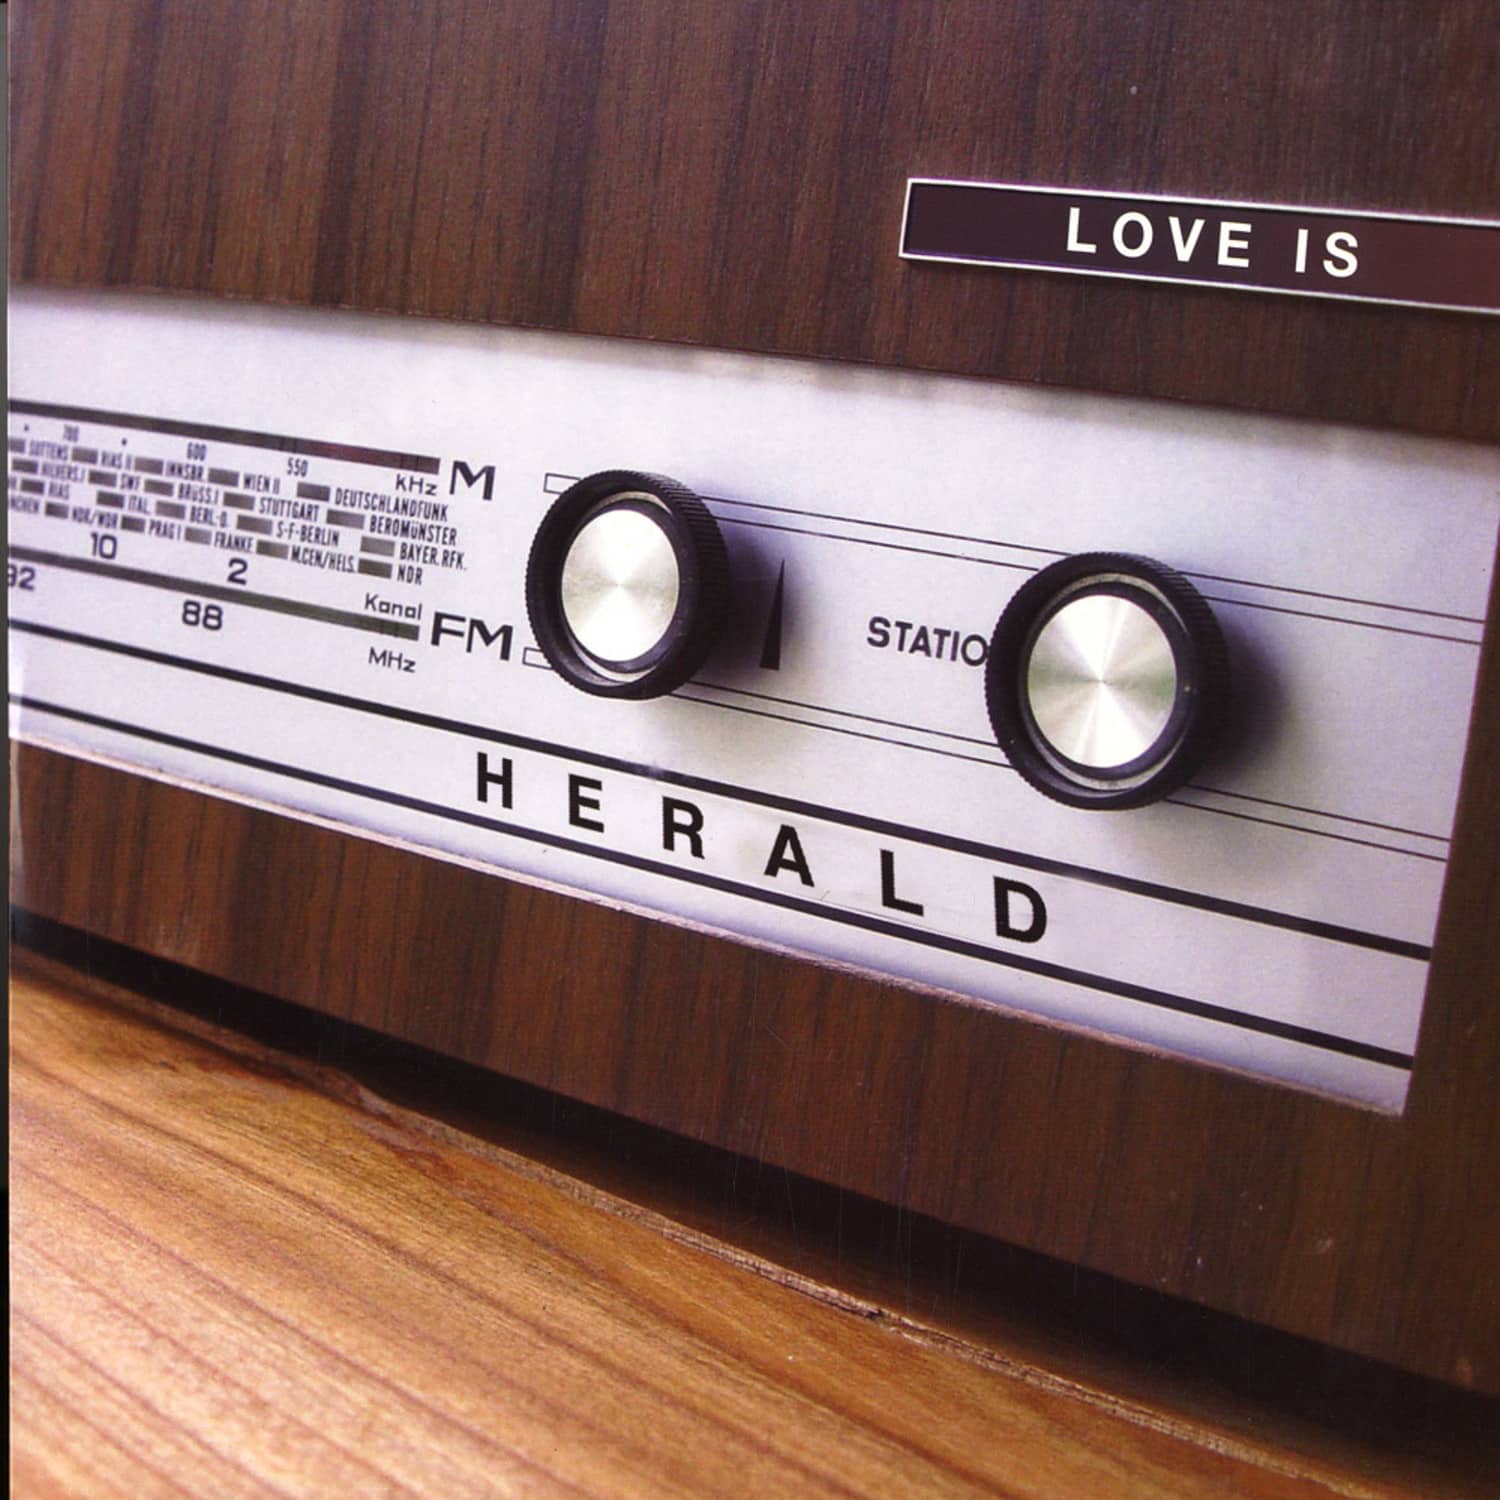 Herald - LOVE IS